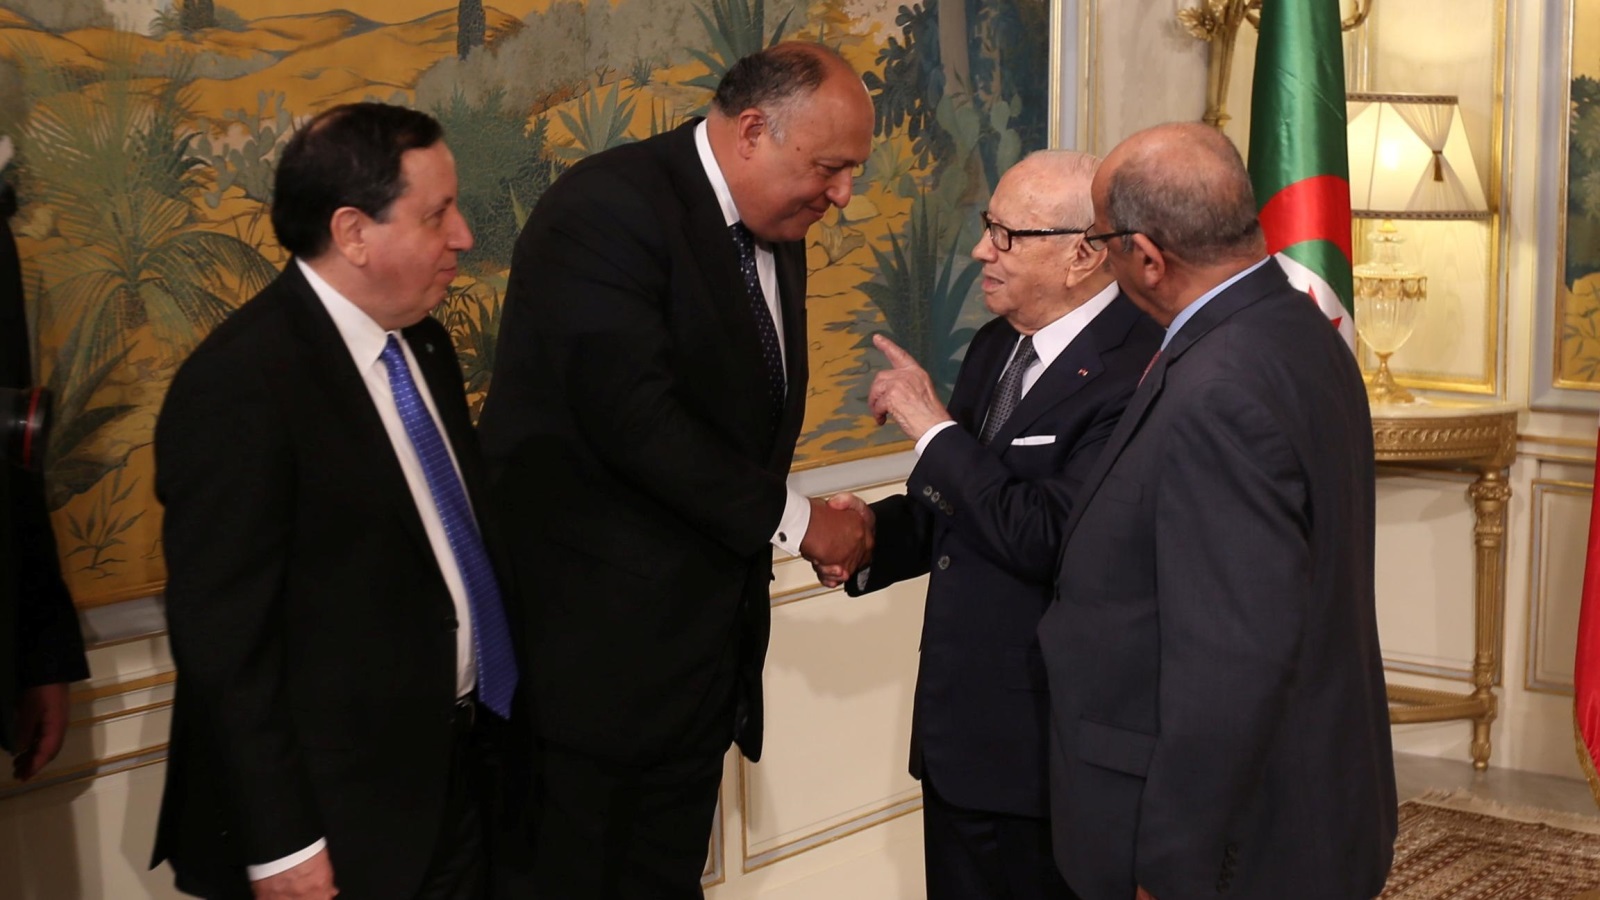 ‪الرئيس التونسي الباجي قايد السبسي يتحدث إلى الوزراء الثلاثة‬ الرئيس التونسي الباجي قايد السبسي يتحدث إلى الوزراء الثلاثة (رويترز)